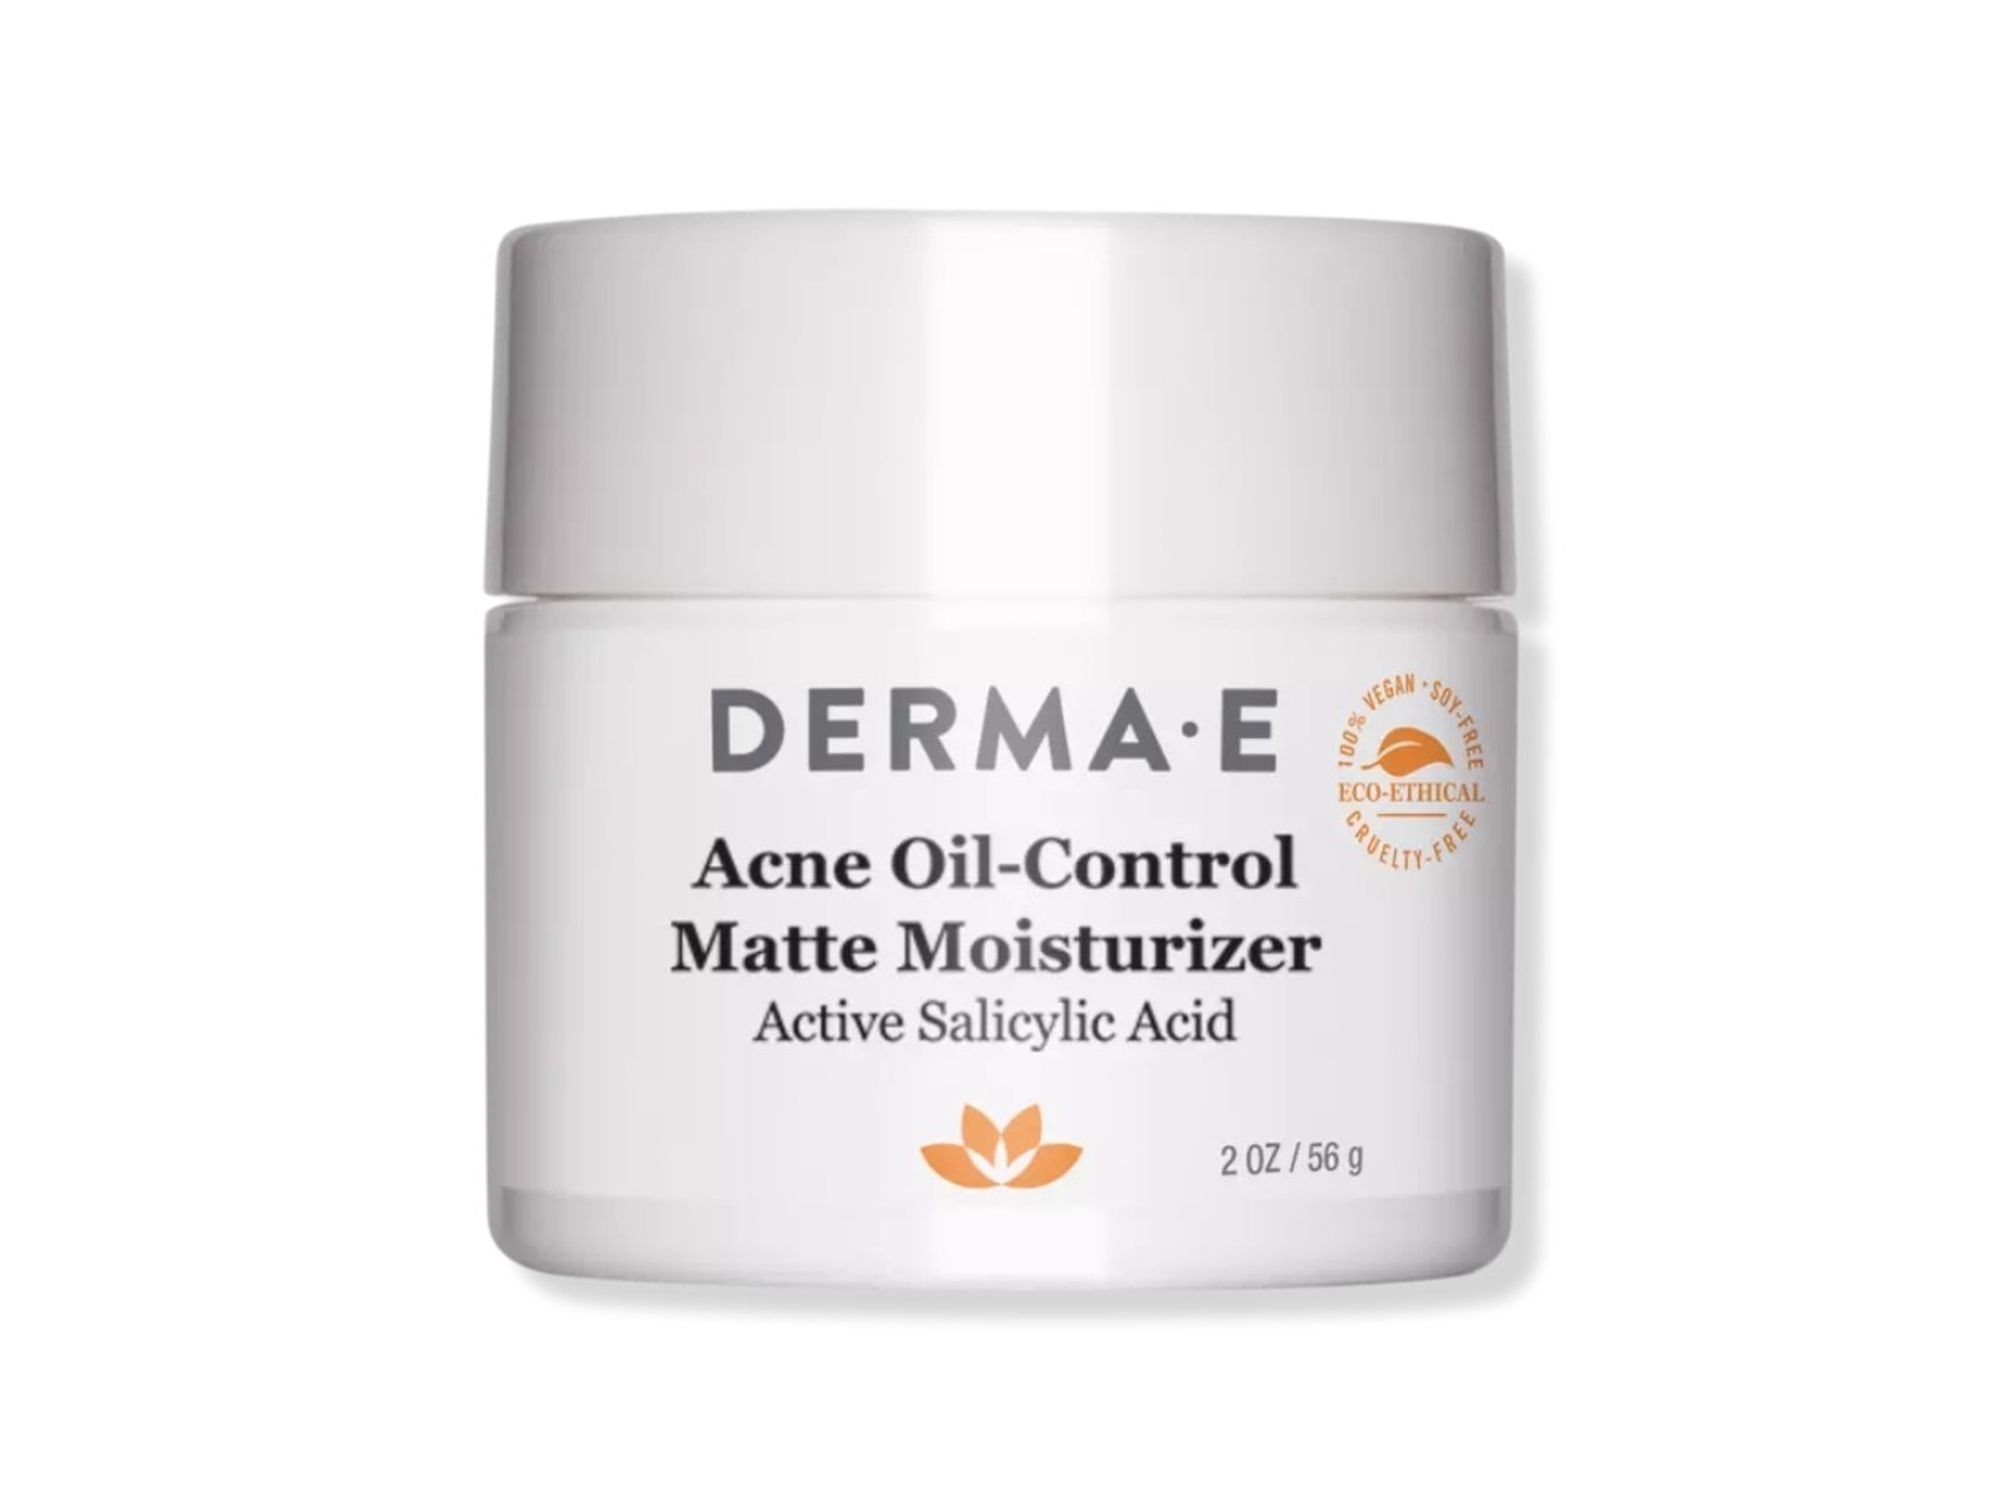 derma-e acne oil-control matte moisturizer